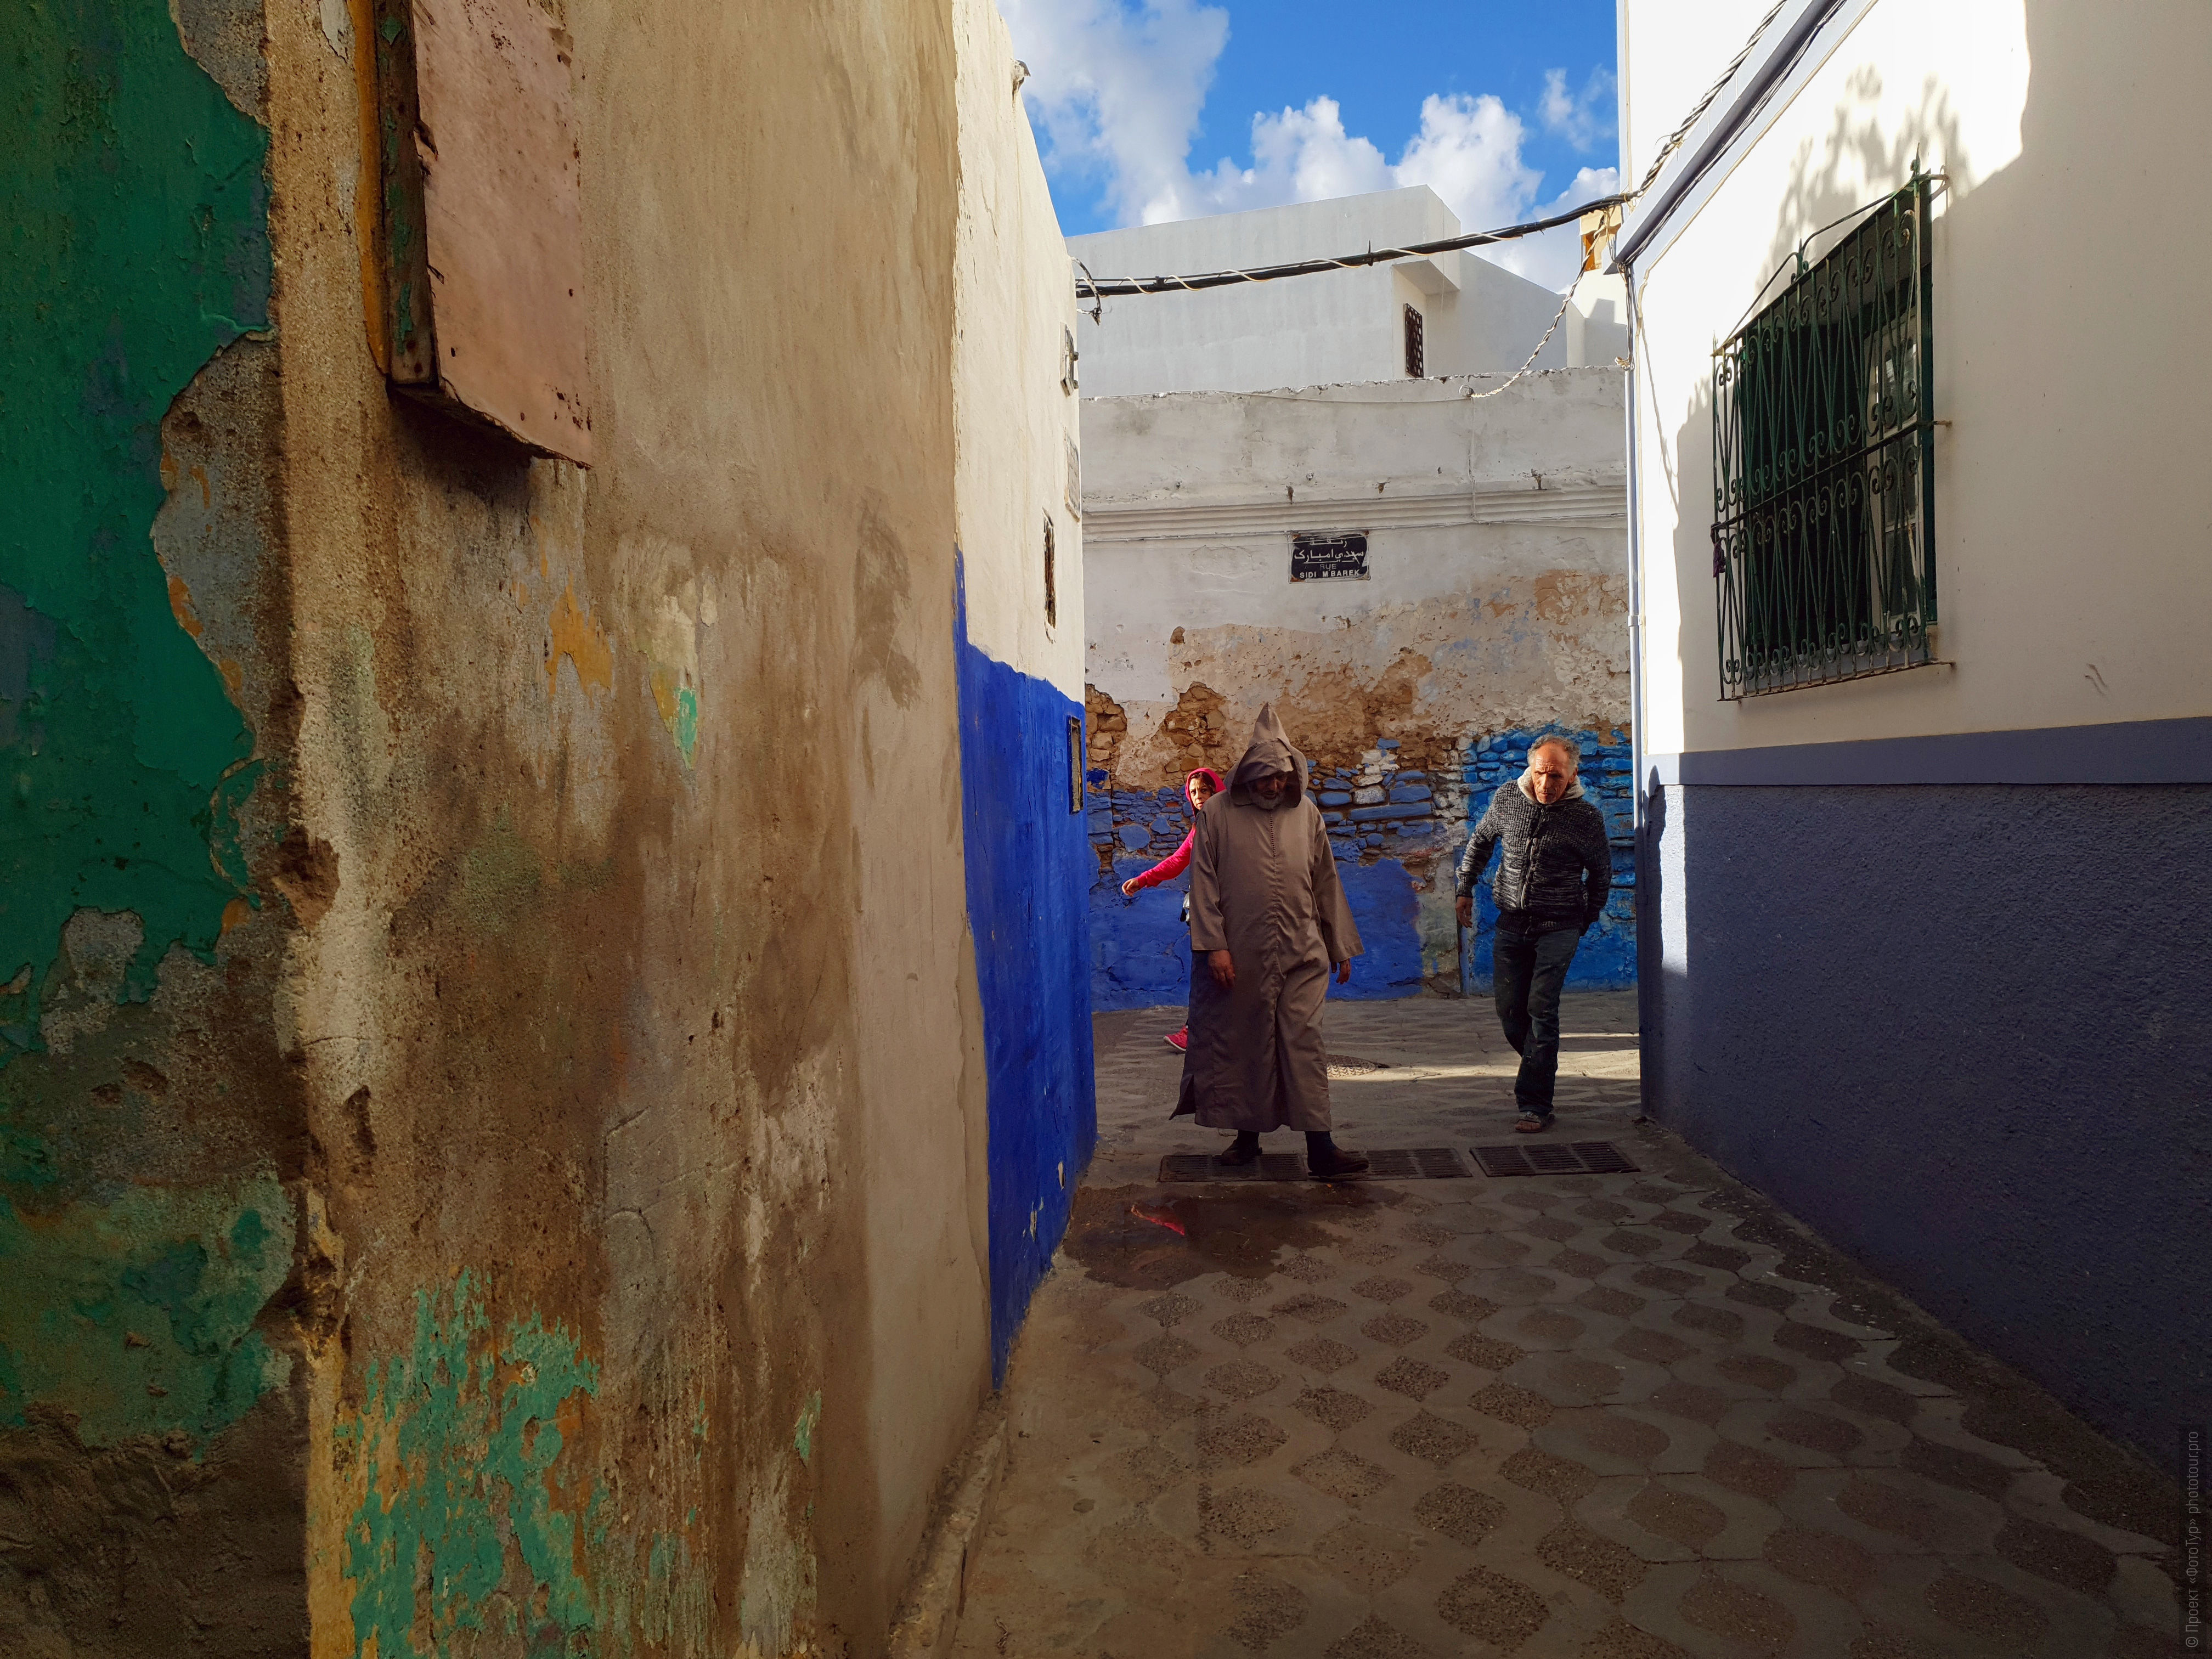 Переулки Асилы, фототур по Марокко, ноябрь 2018 года.